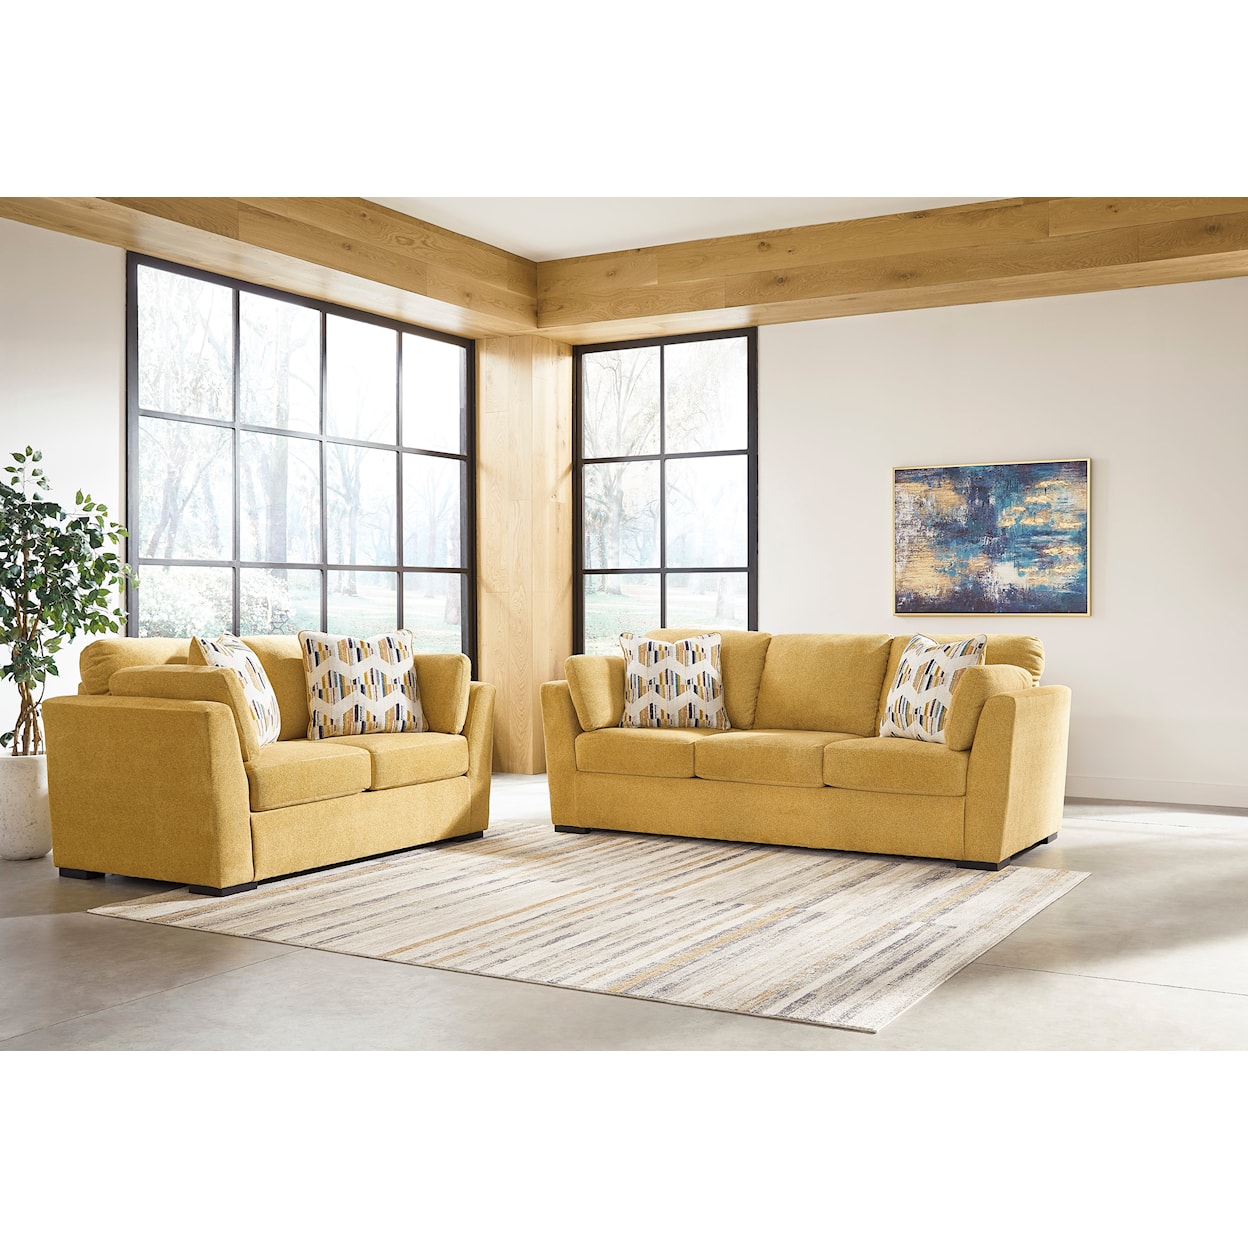 StyleLine Keerwick Living Room Set